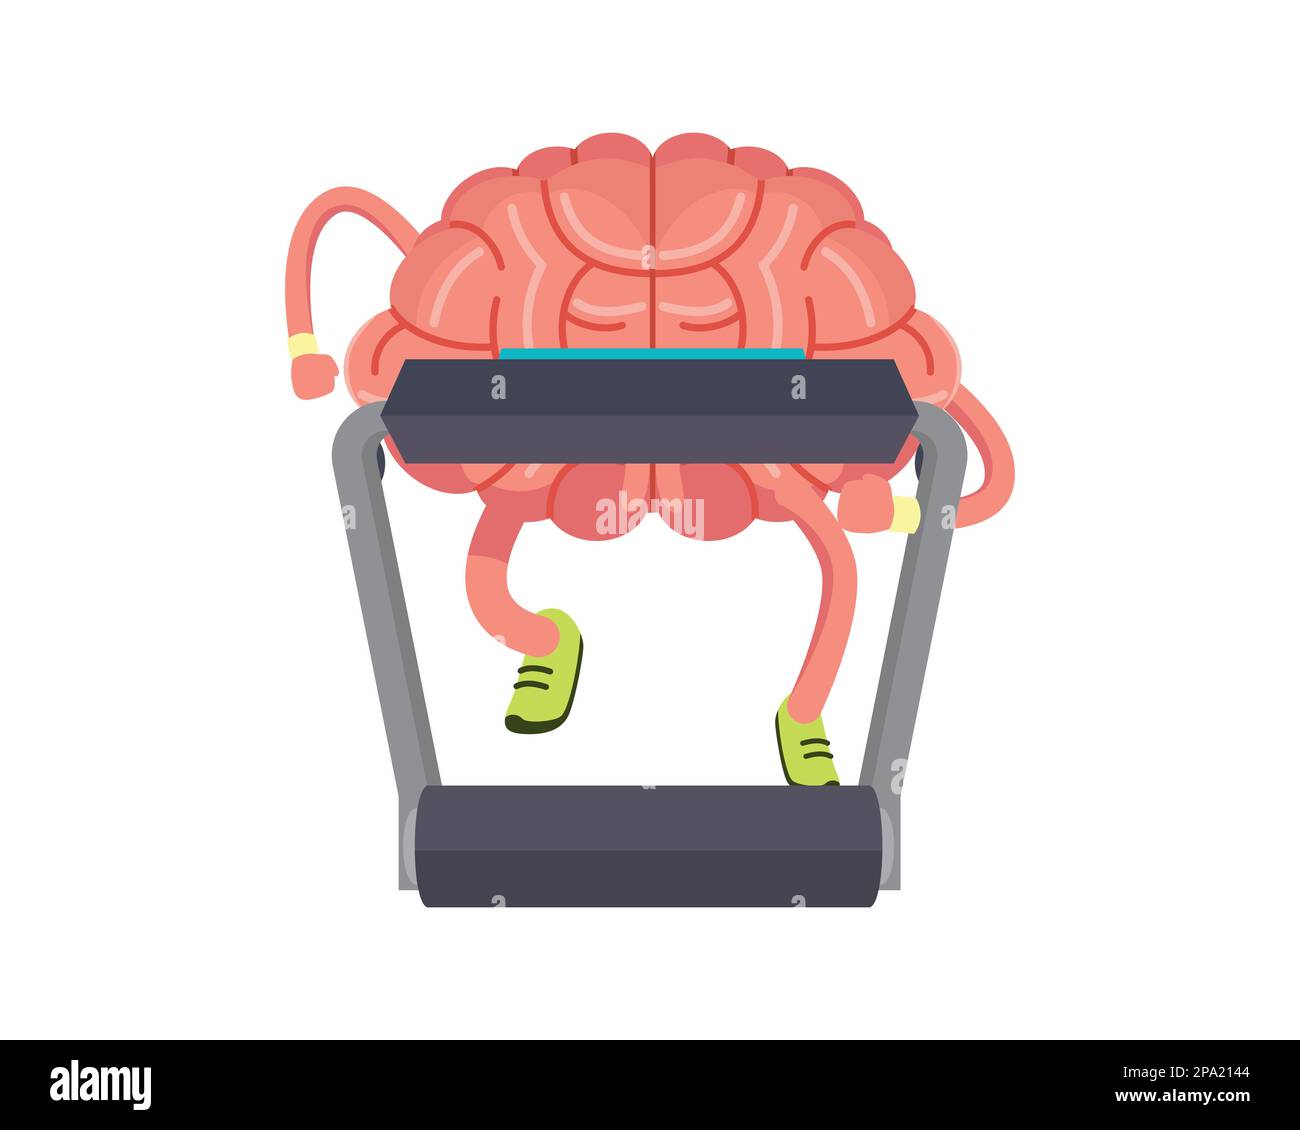 Cervello che si sta lavorando su un'illustrazione del tapis roulant come simbolizzazione del pensiero duro o dell'apprendimento. Visualizzato con un'illustrazione dettagliata Illustrazione Vettoriale